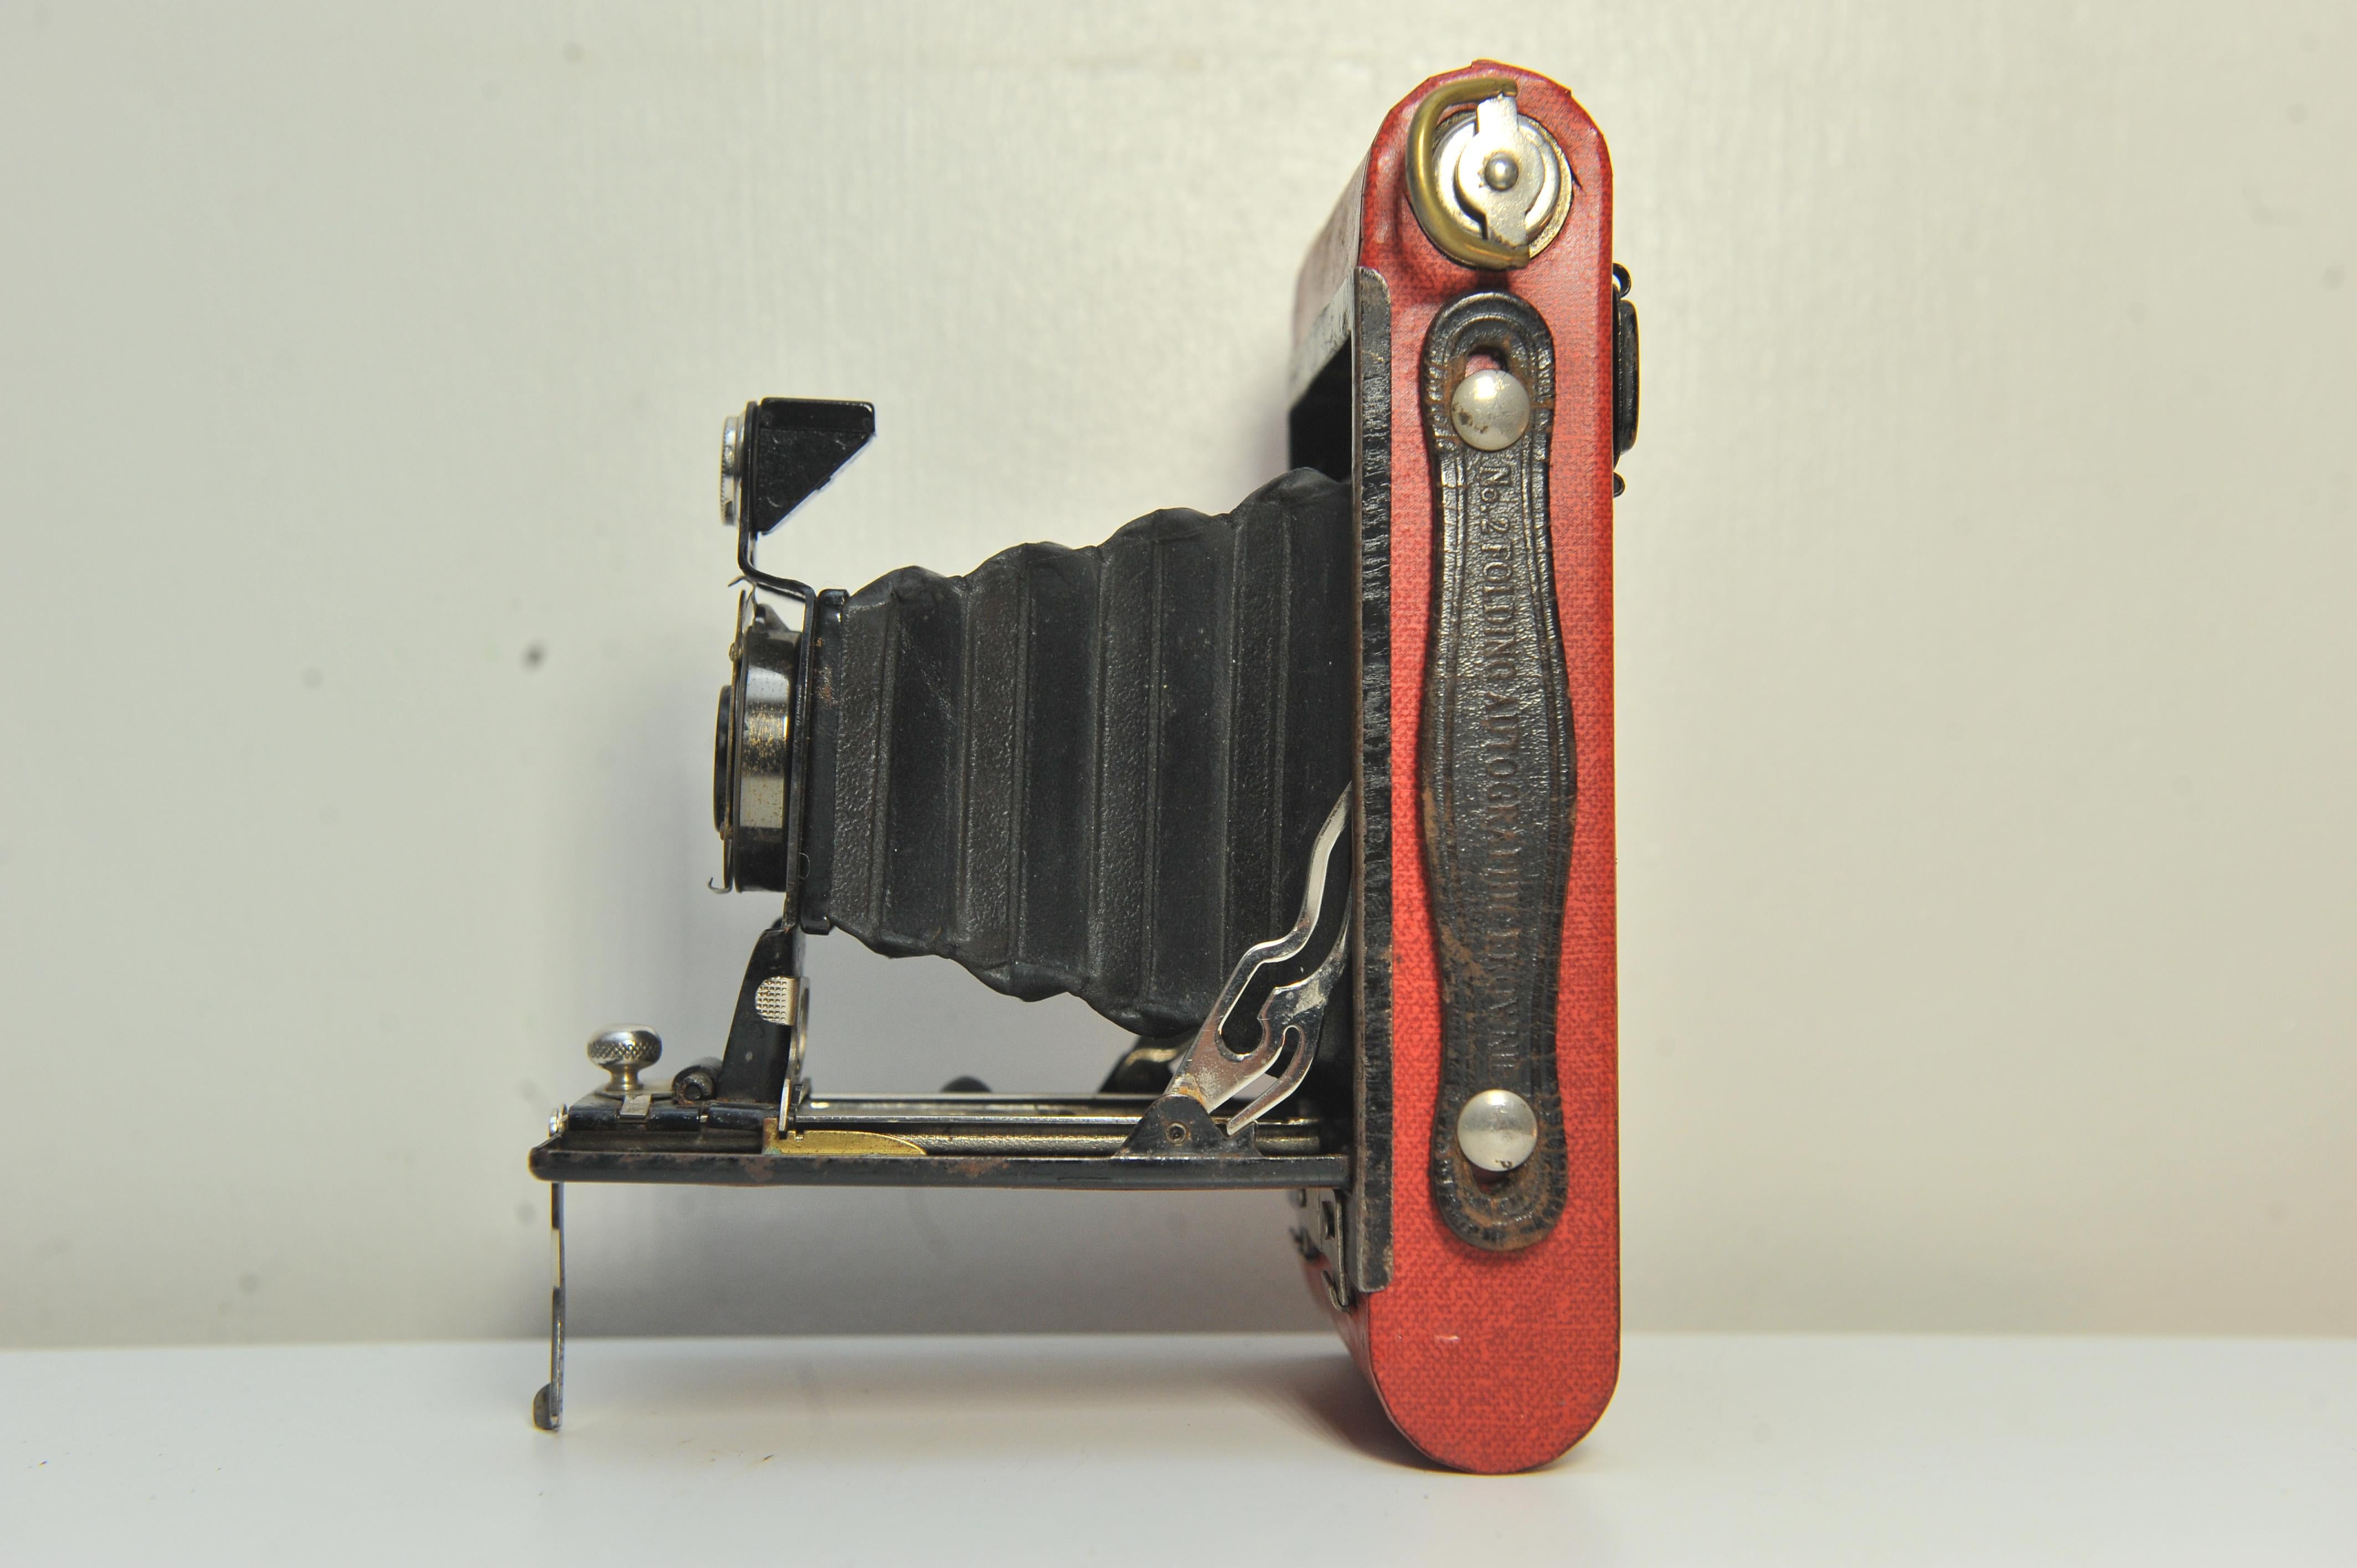 Eastman Kodak Nr. 2 Folding Autographic Brownie Folding Balg Kamera In Rot

Hergestellt zwischen 1915 und 1926
Nimmt 120er Rollfilm auf
Mit kugelgelagertem Kodak-Verschluss 
